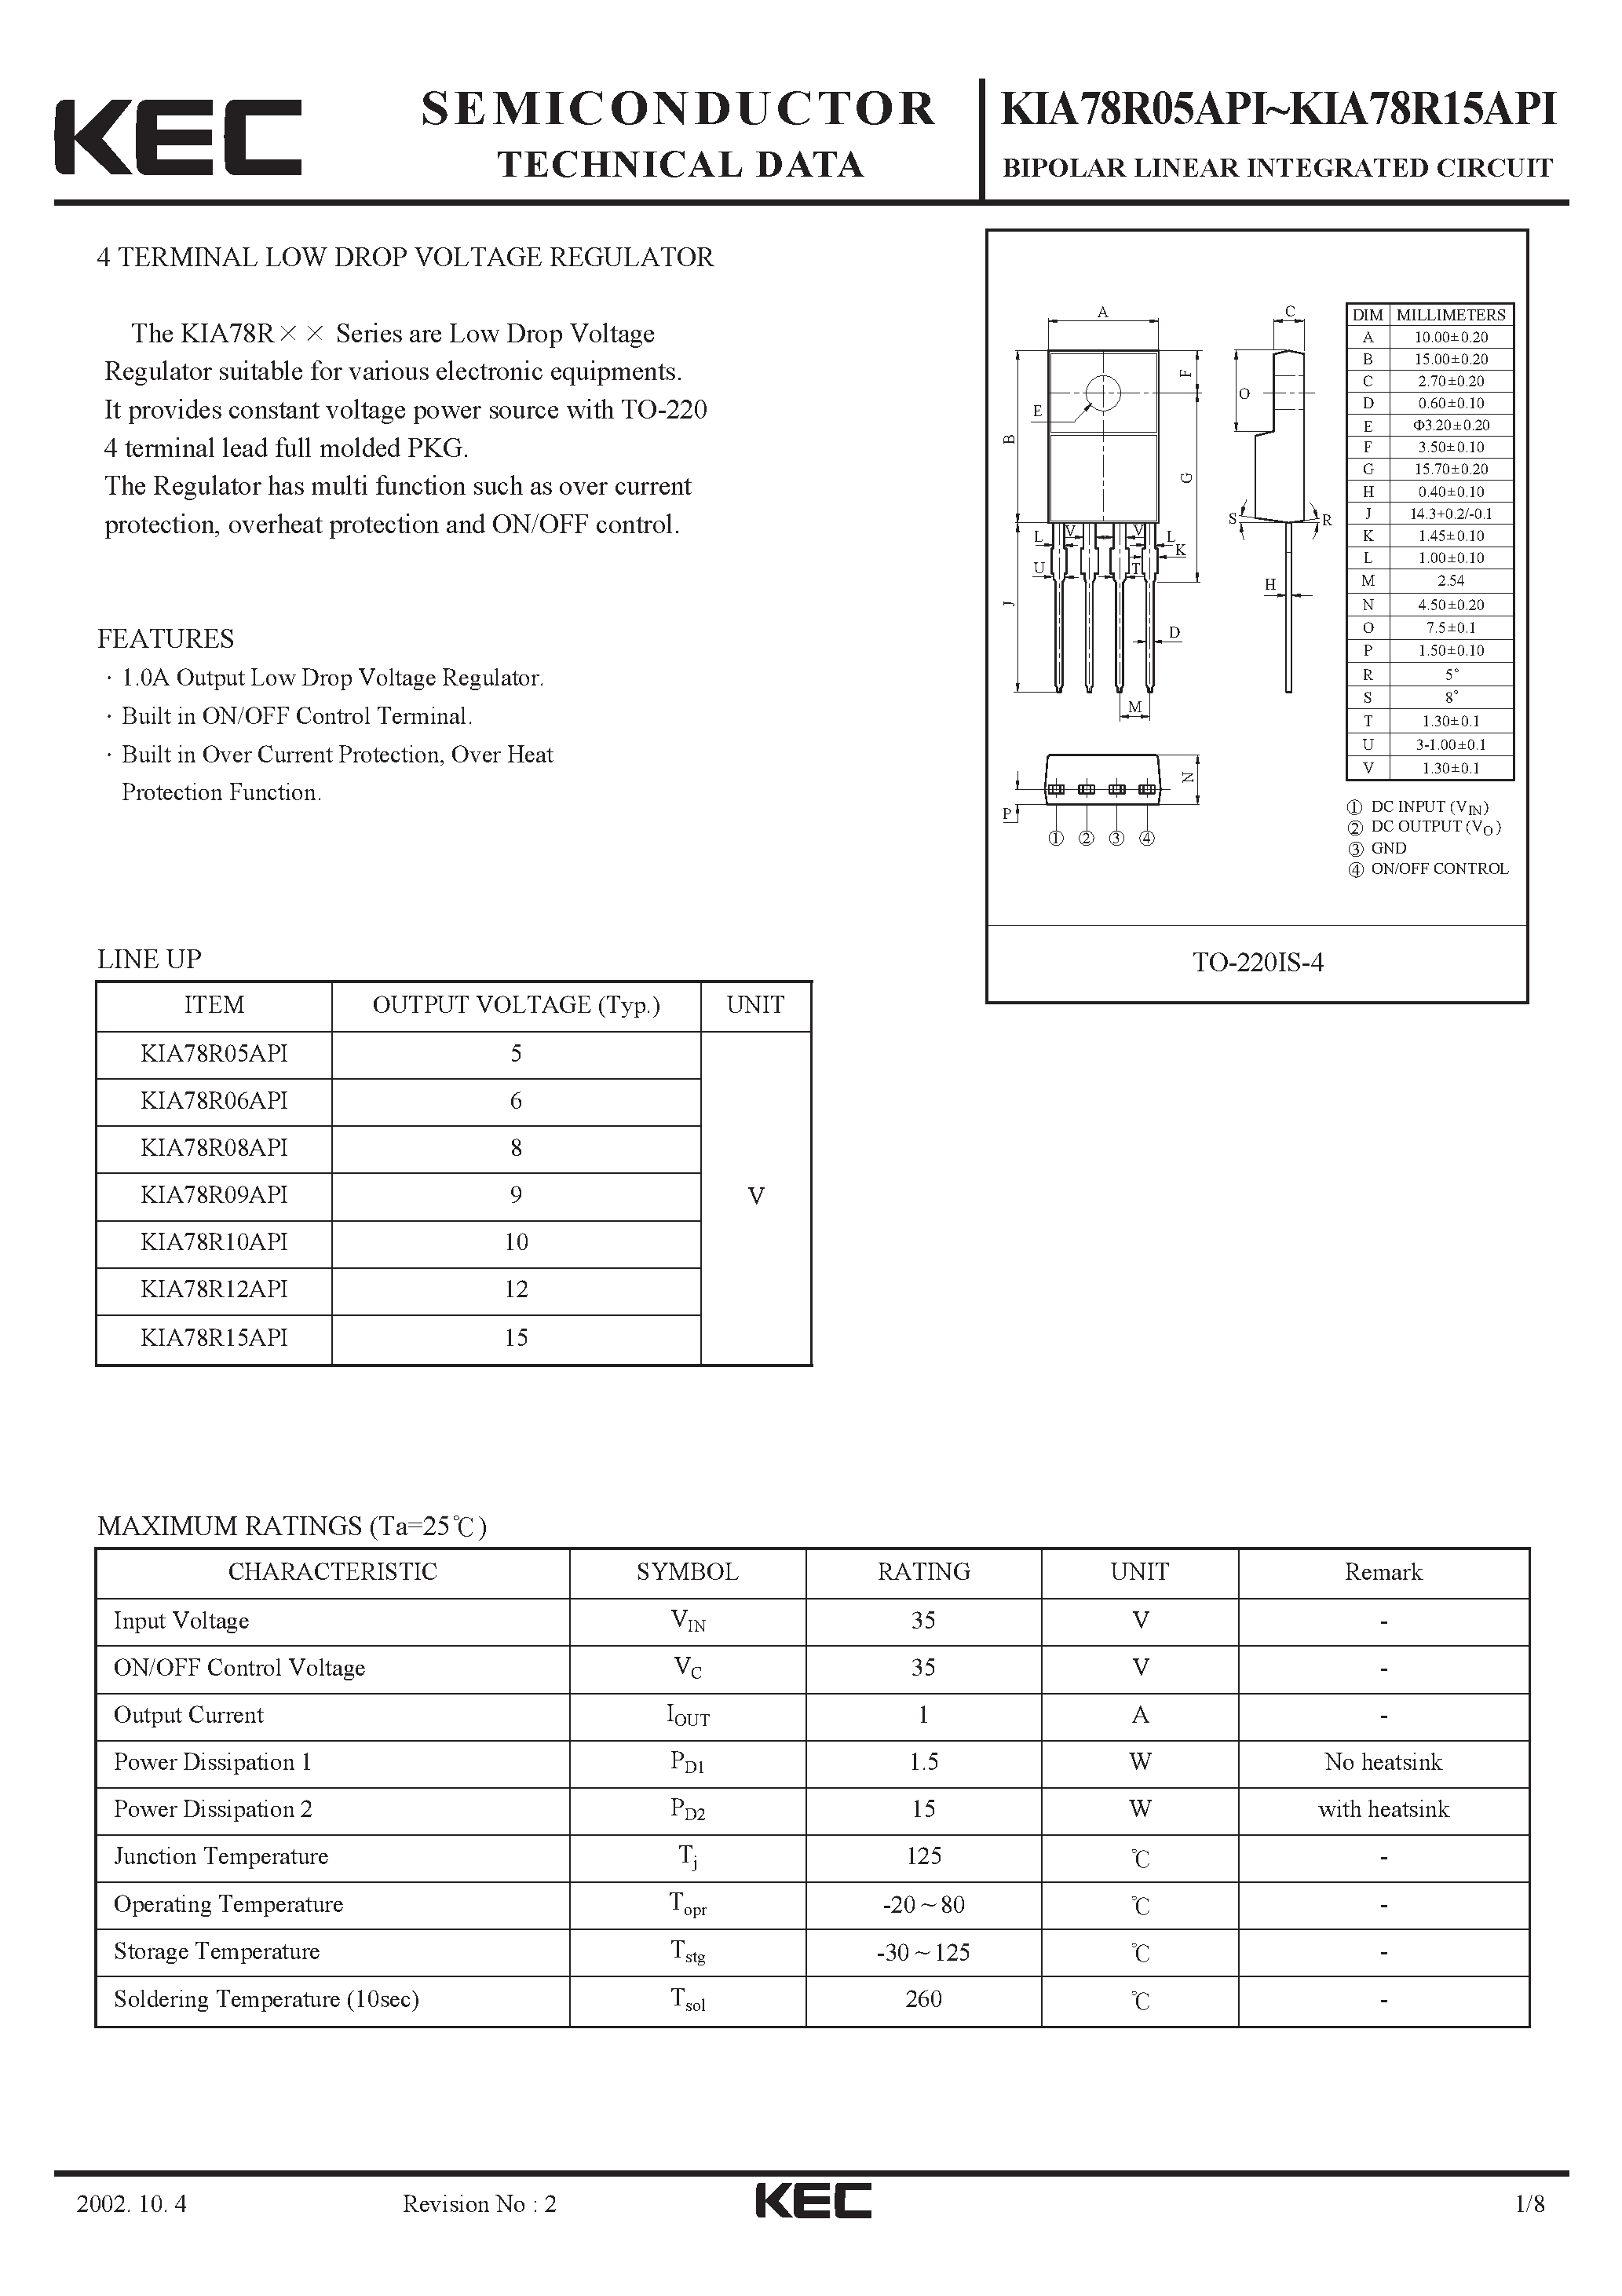 Datasheet KIA78R08API - BIPOLAR LINEAR INTEGRATED CIRCUIT (4 TERMINAL LOW DROP VOLTAGE REGULATOR) page 1